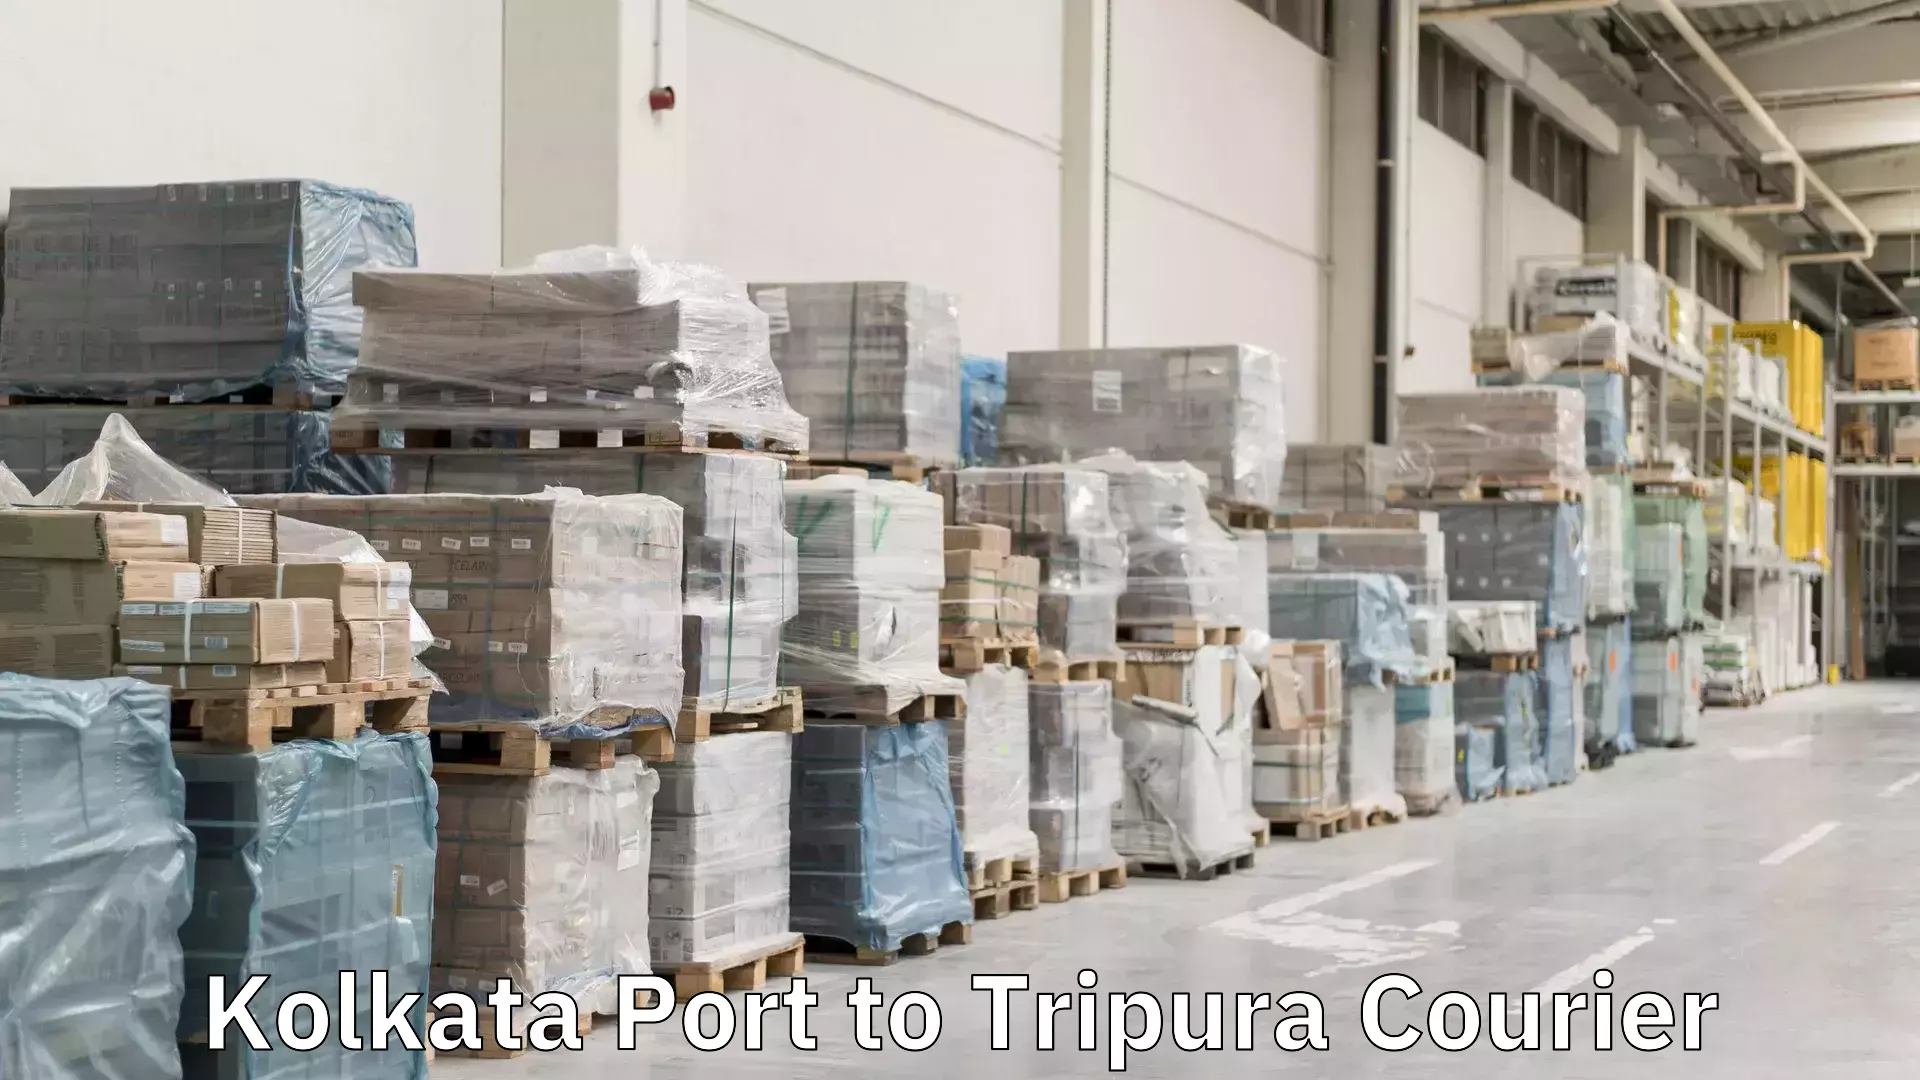 Next-day freight services Kolkata Port to Tripura